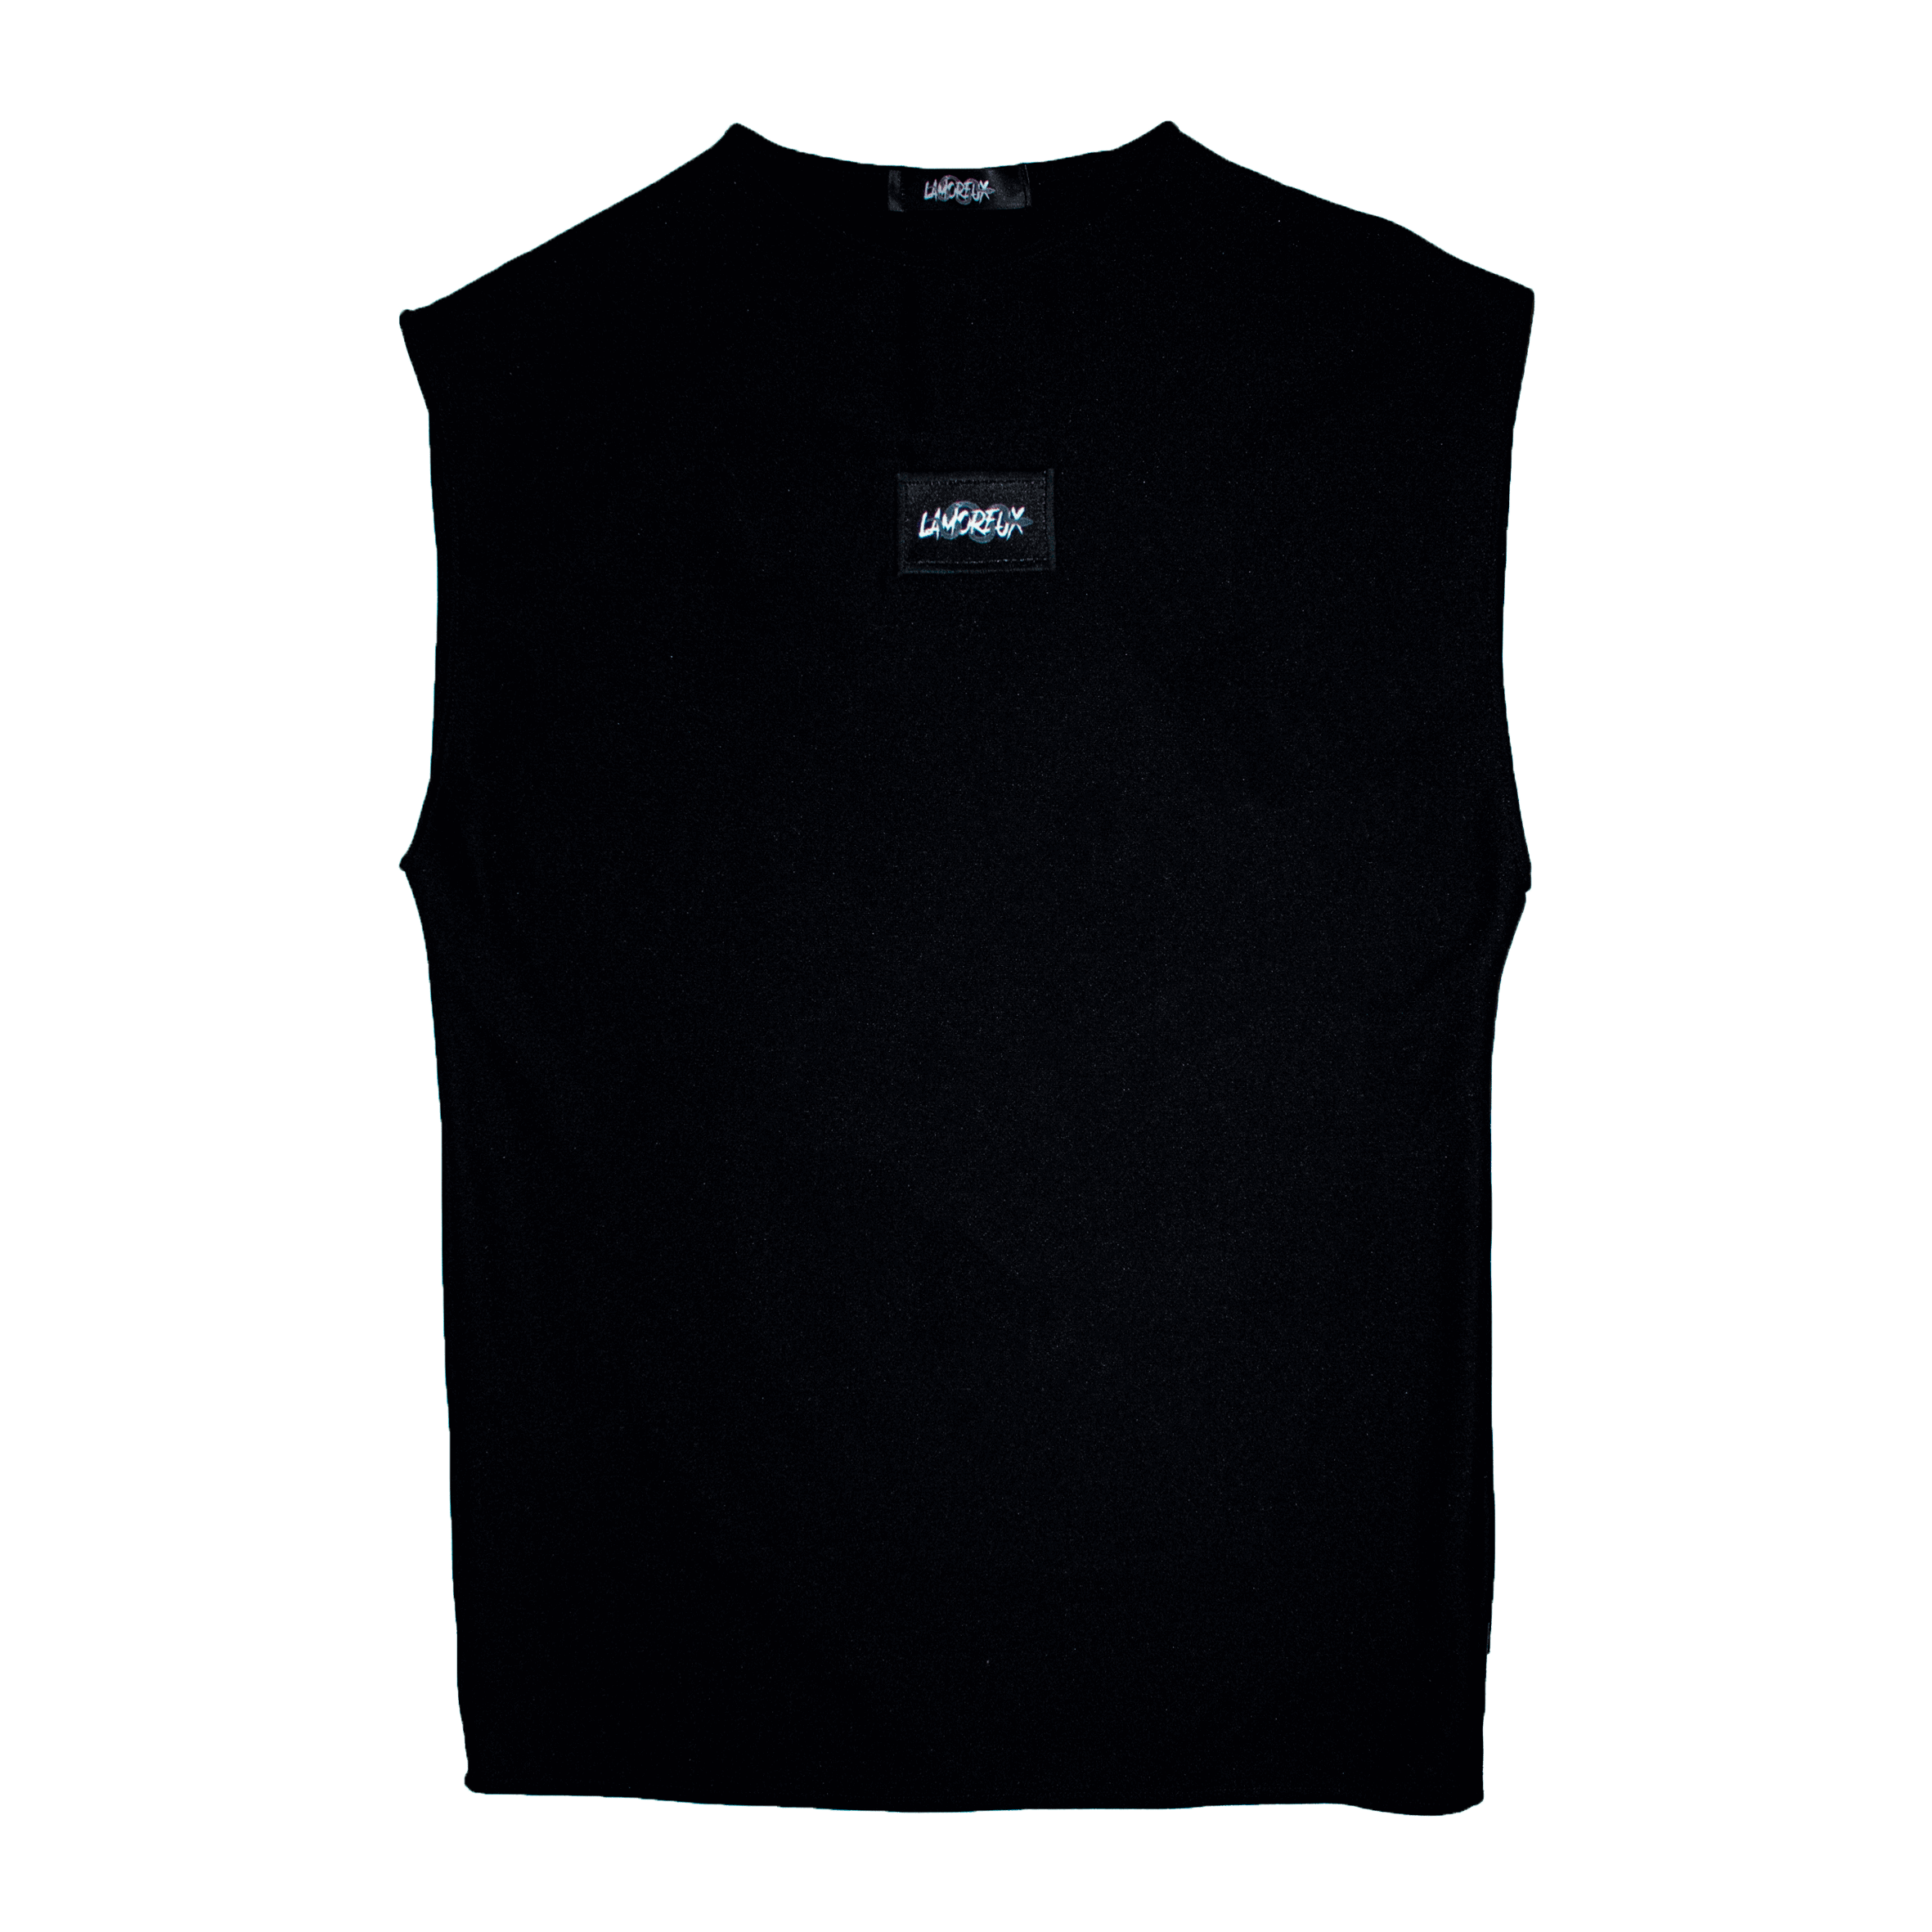 T-Shirt NL-02 black unisex without sleeves oversize | Lamoreux Studio